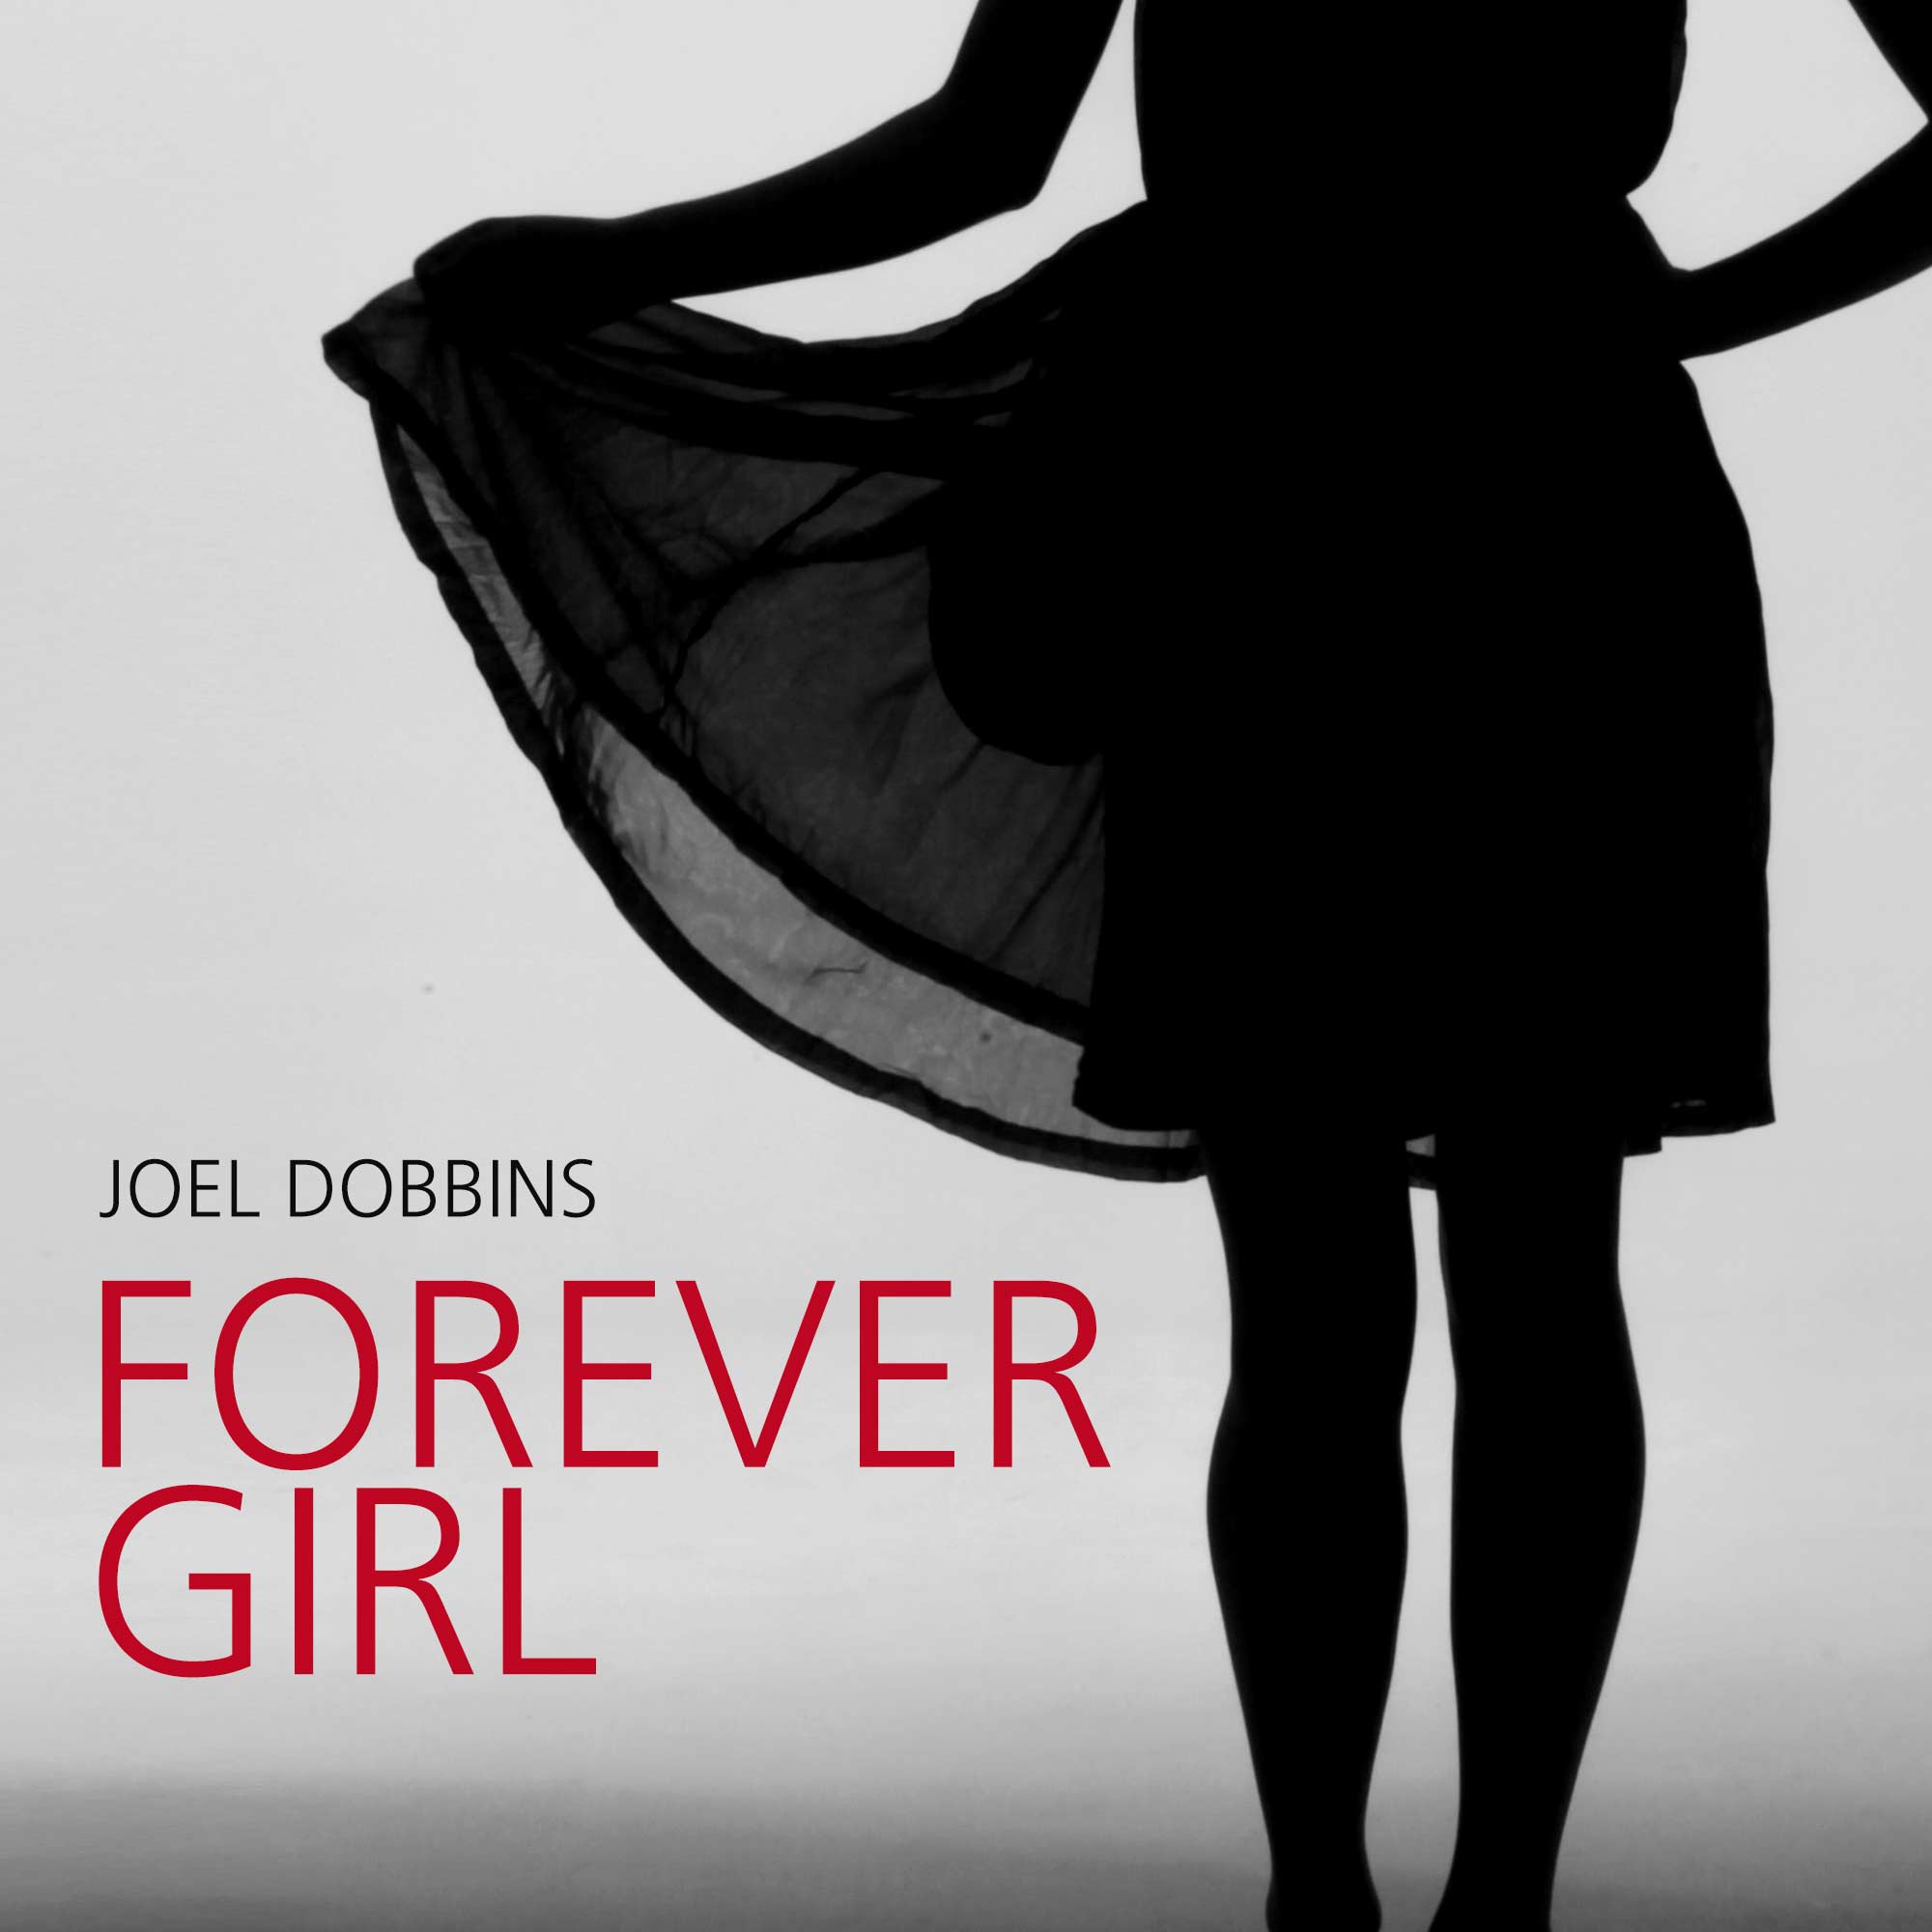 Joel Dobbins: Forever Girl